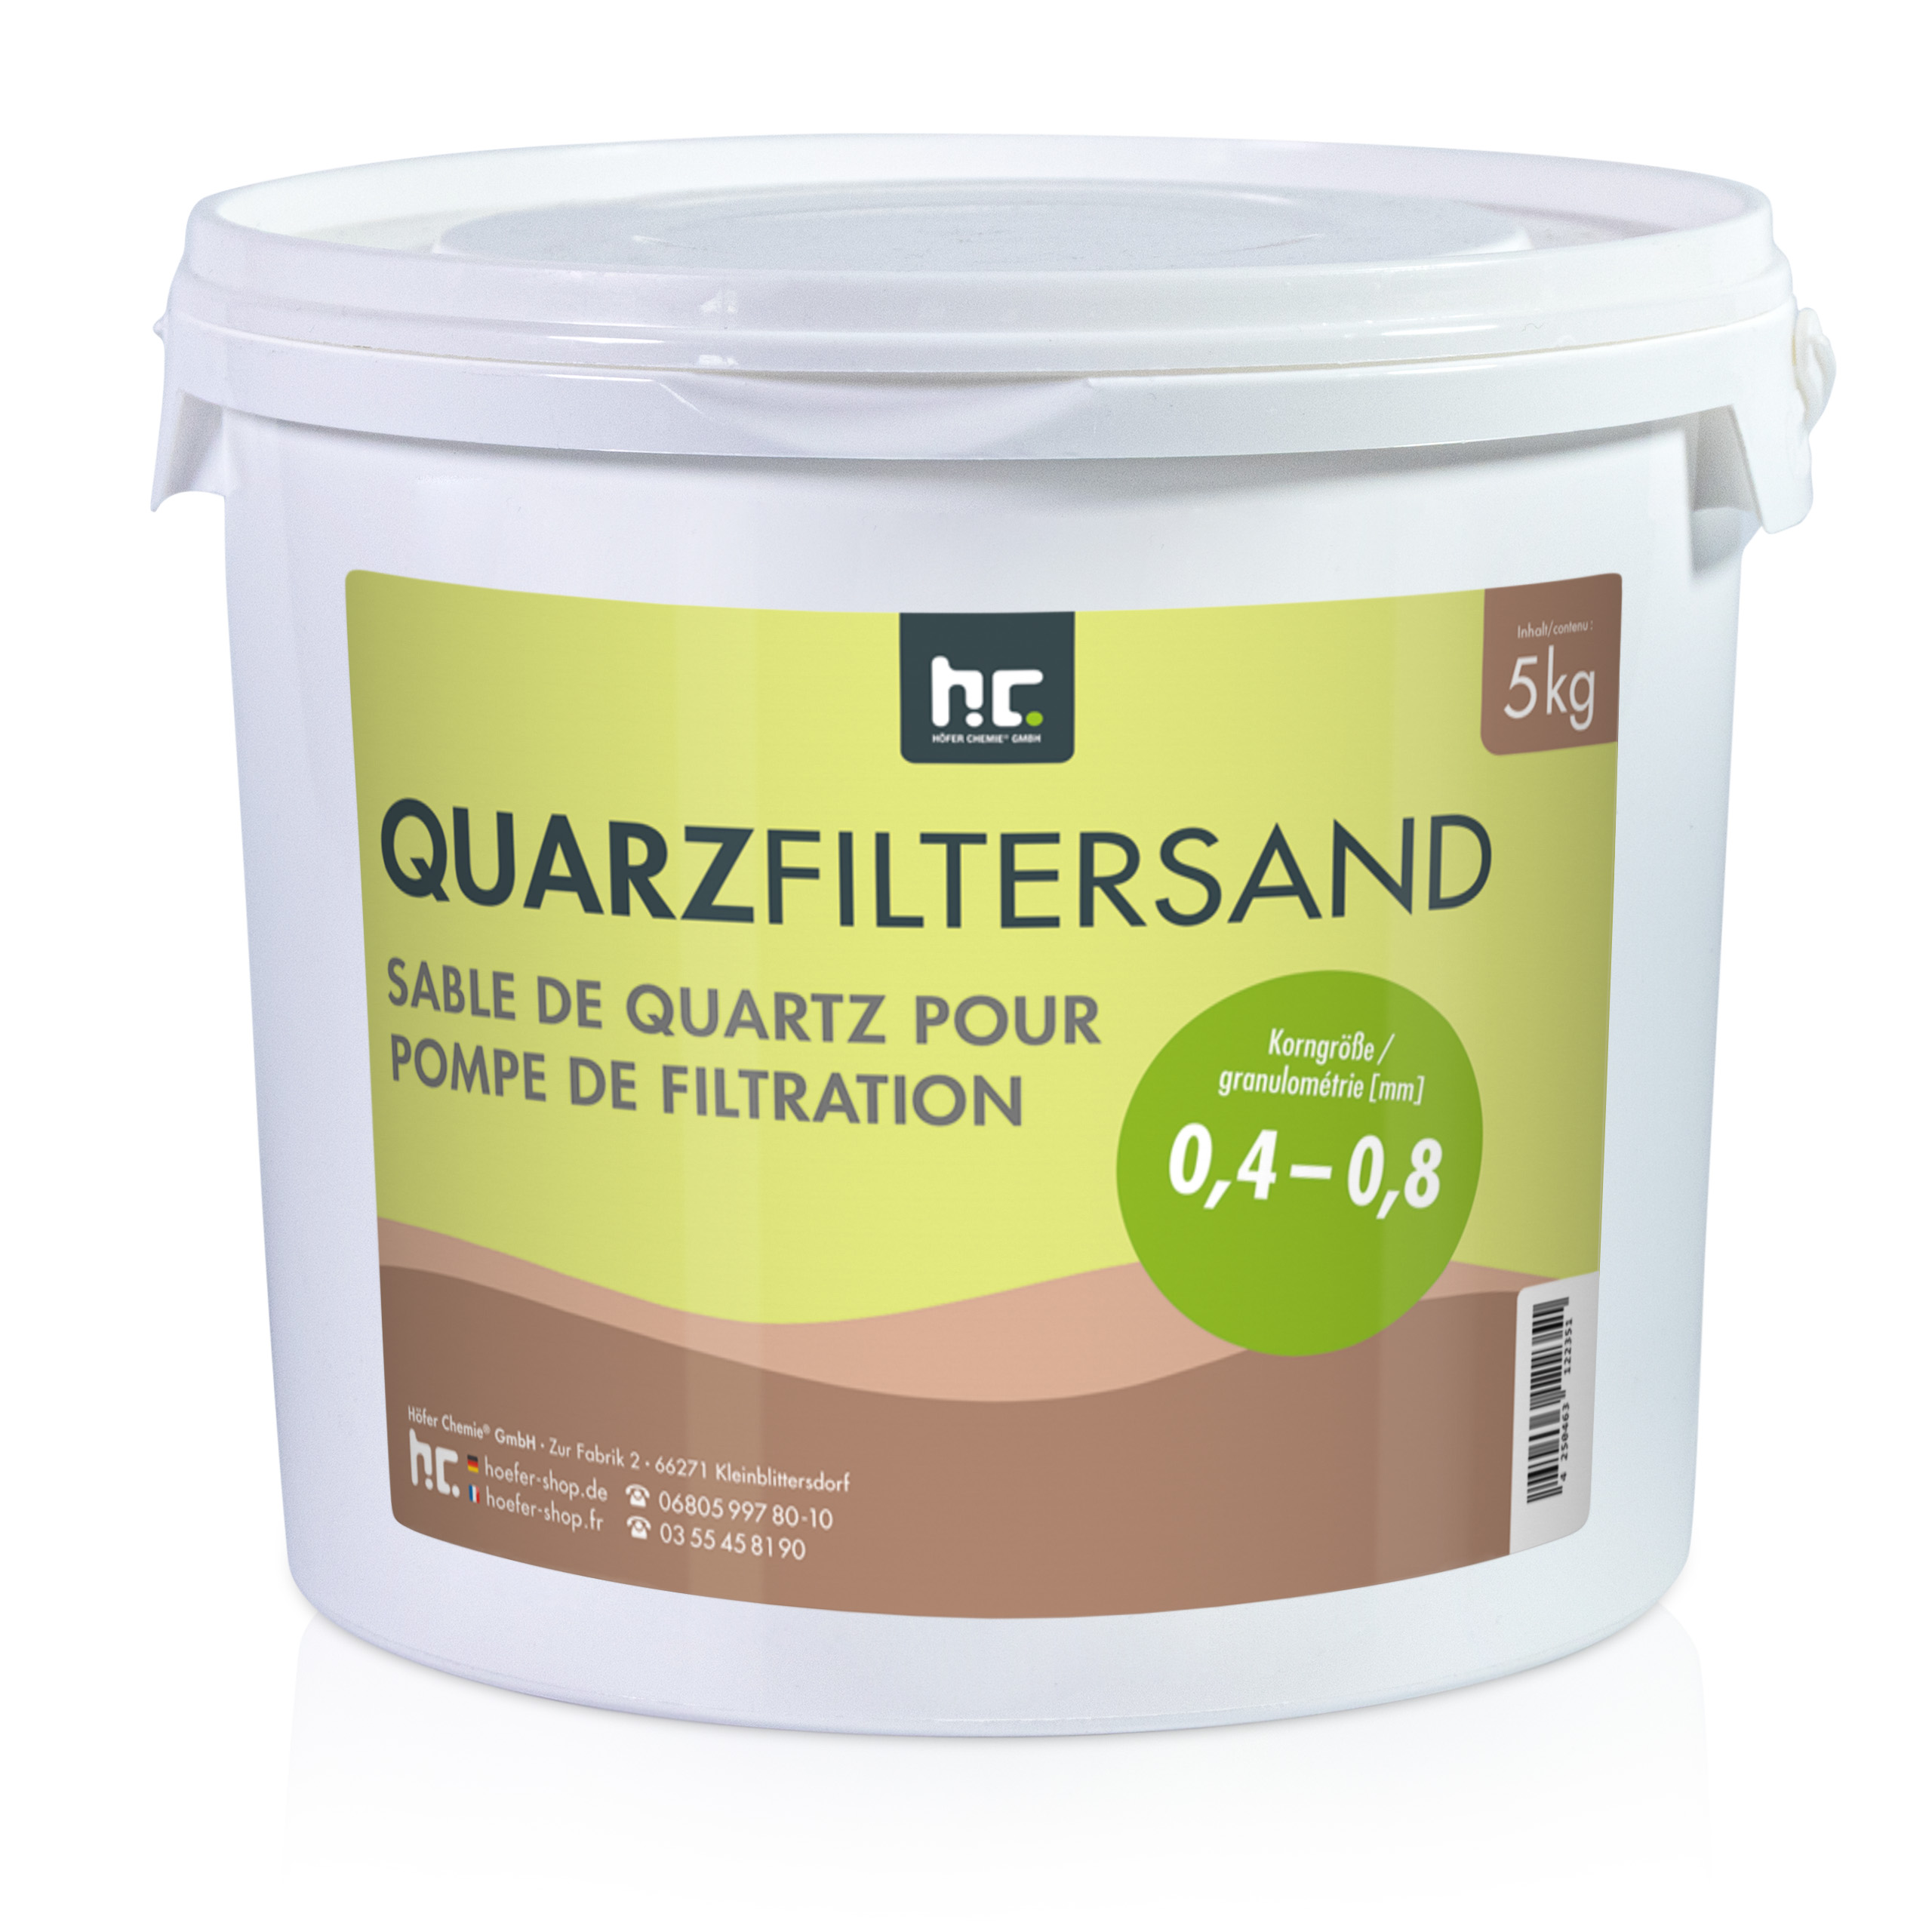 5 kg de Sable de Quartz Premium pour Filtre 0,4 - 0,8 mm